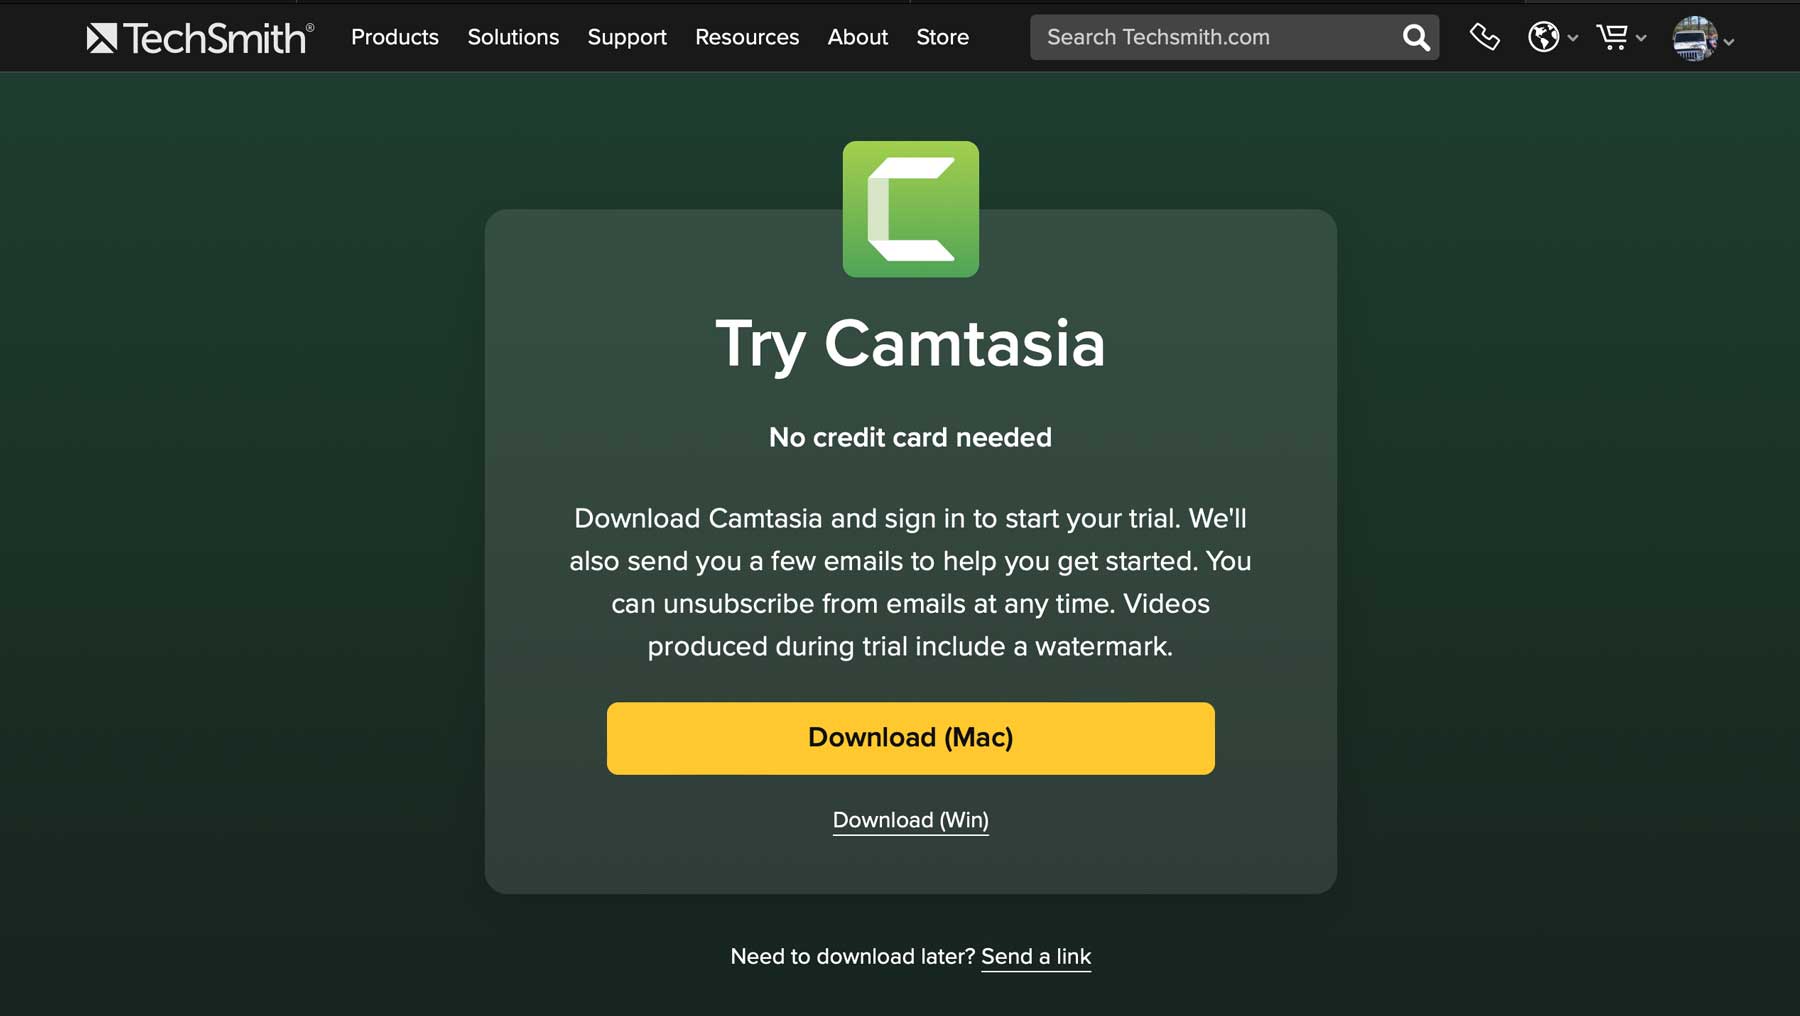 TechSmith Camtasia review